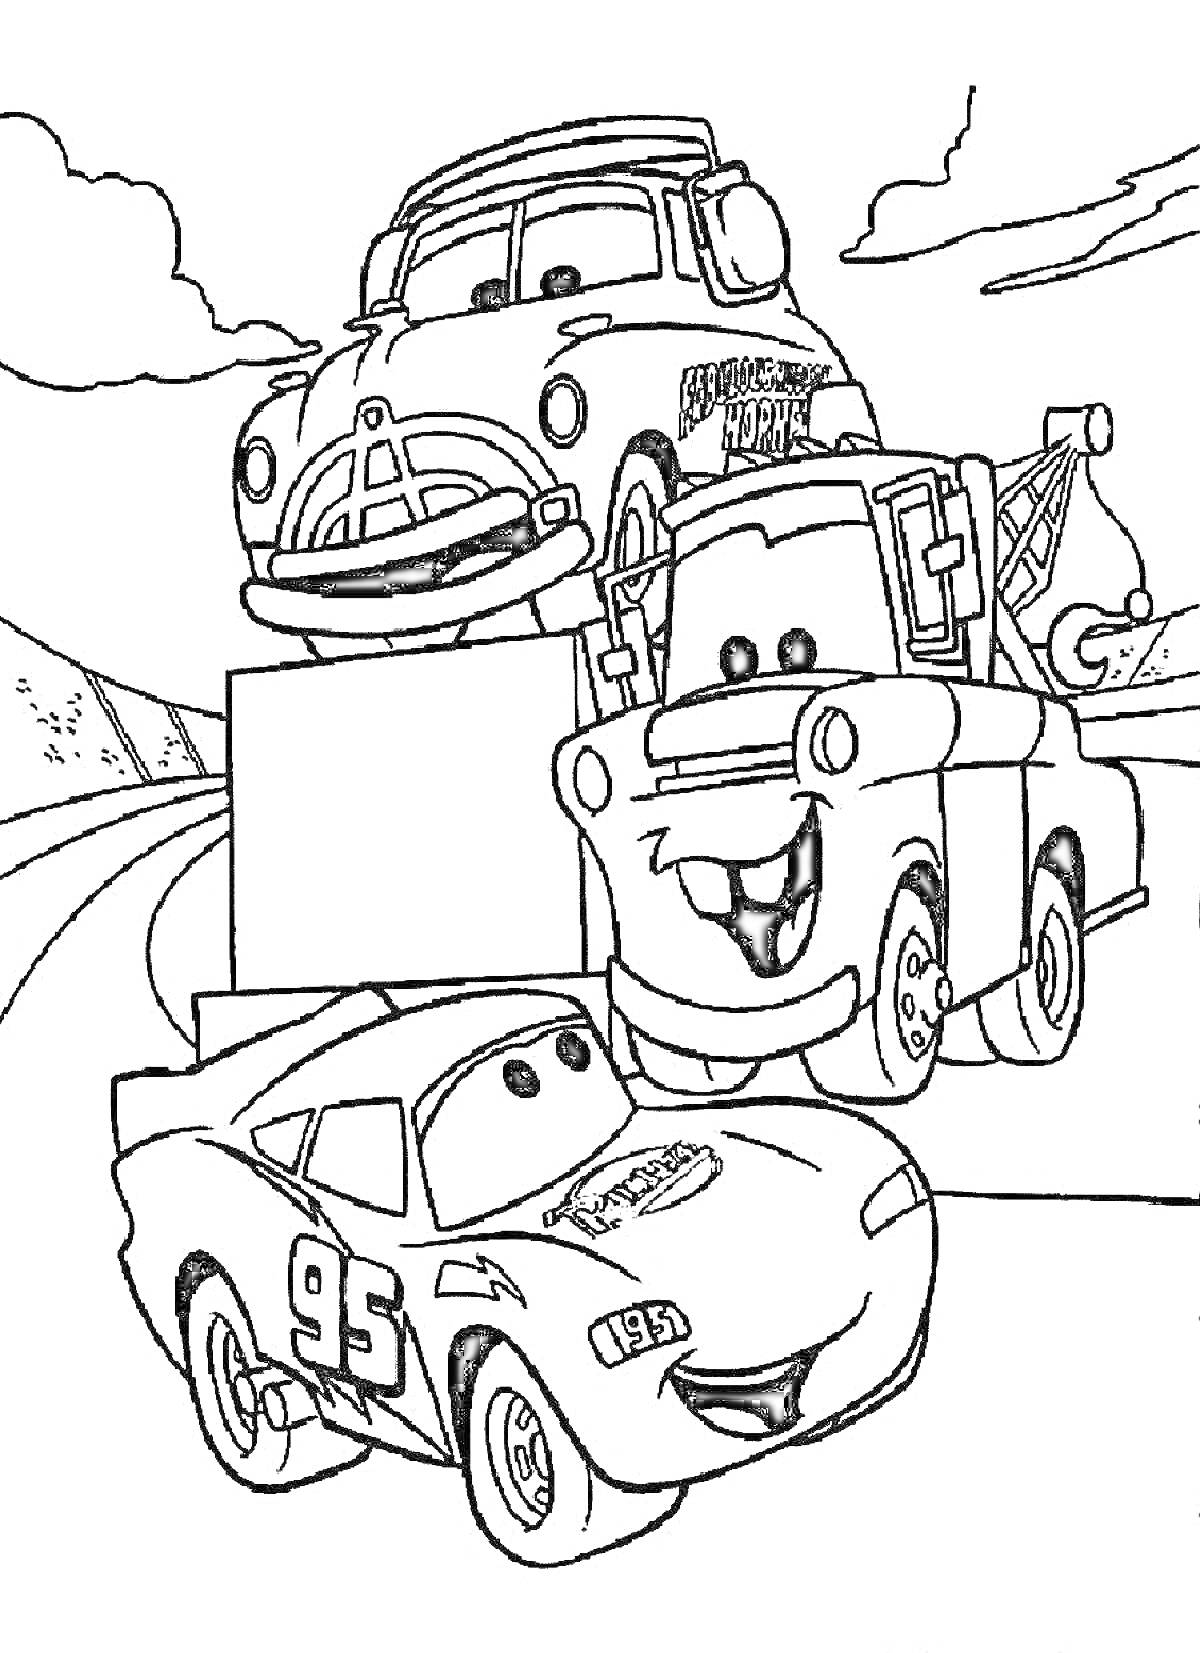 Машины с Маквином, Док Гадсон, Мэтр на дороге с горами на заднем плане